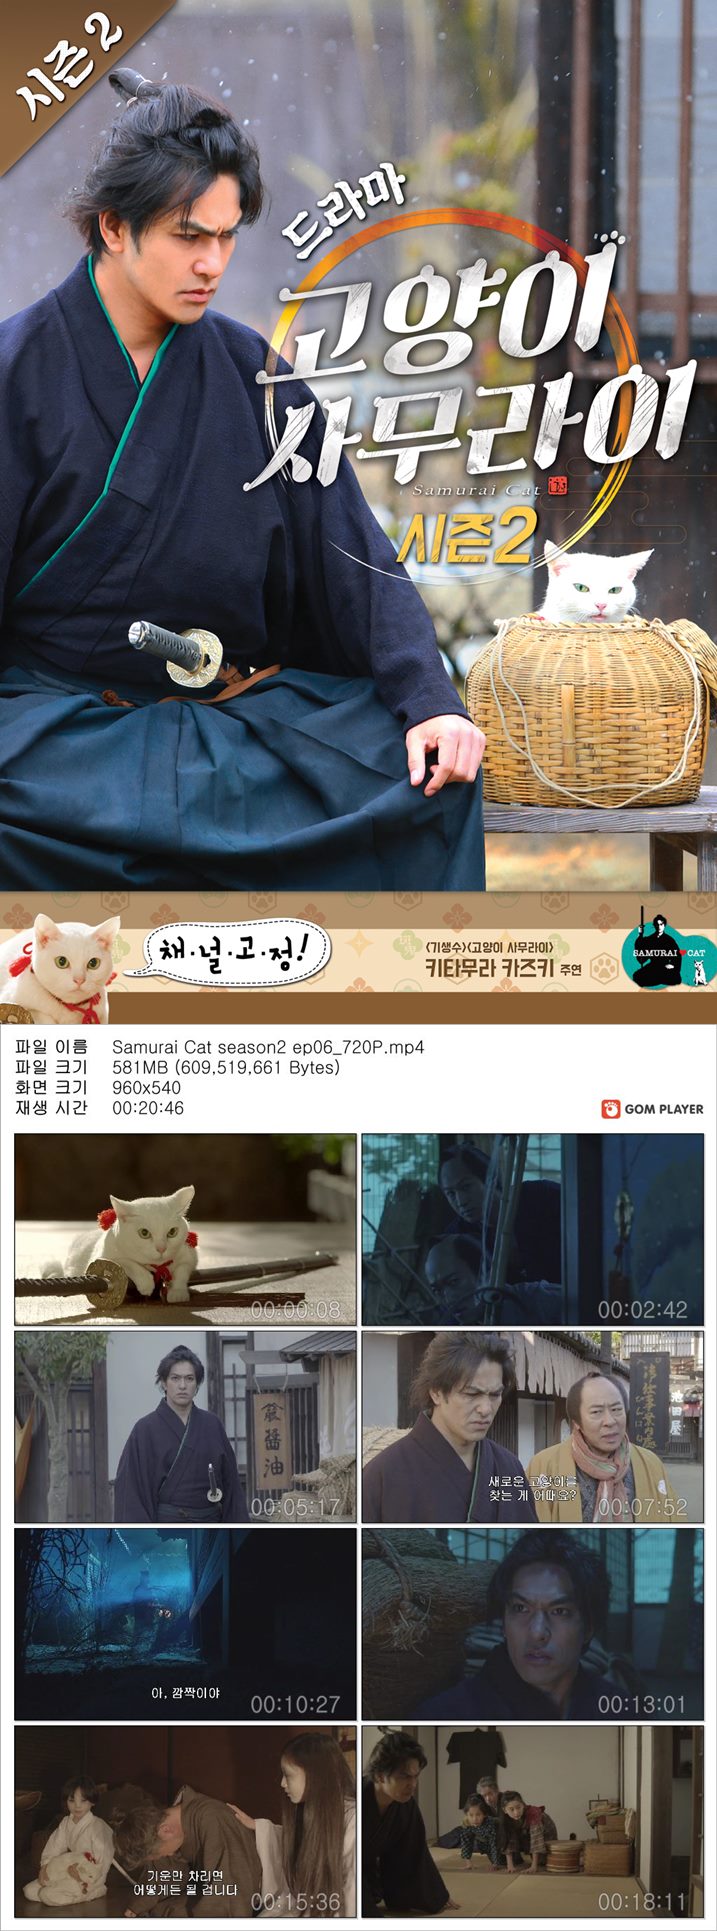 [고양이사무라이 시즌 2]HD 일드 완결 마성의 고양이 E06 mlnw 토렌트